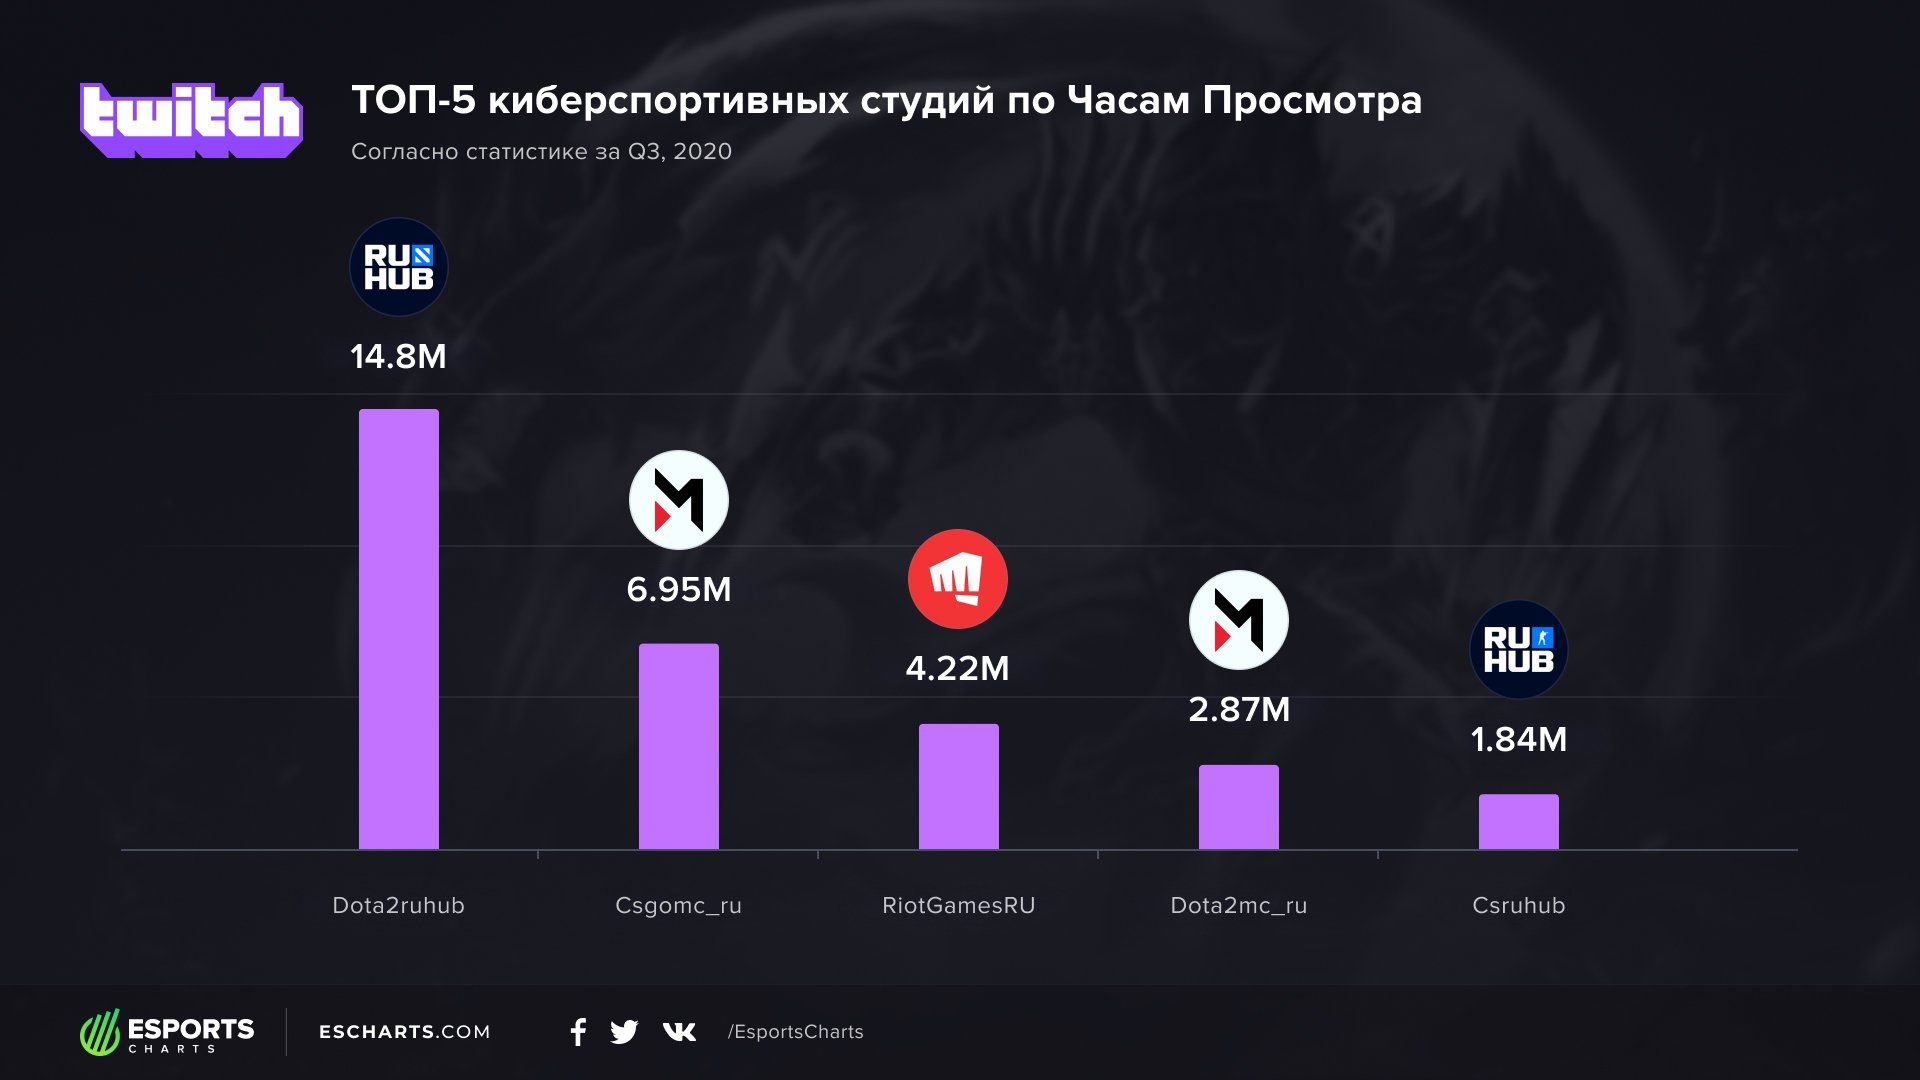 Статистика русскоязычных каналов с киберспортивными трансляциями в третьем квартале 2020 года | Источник: Esports Charts